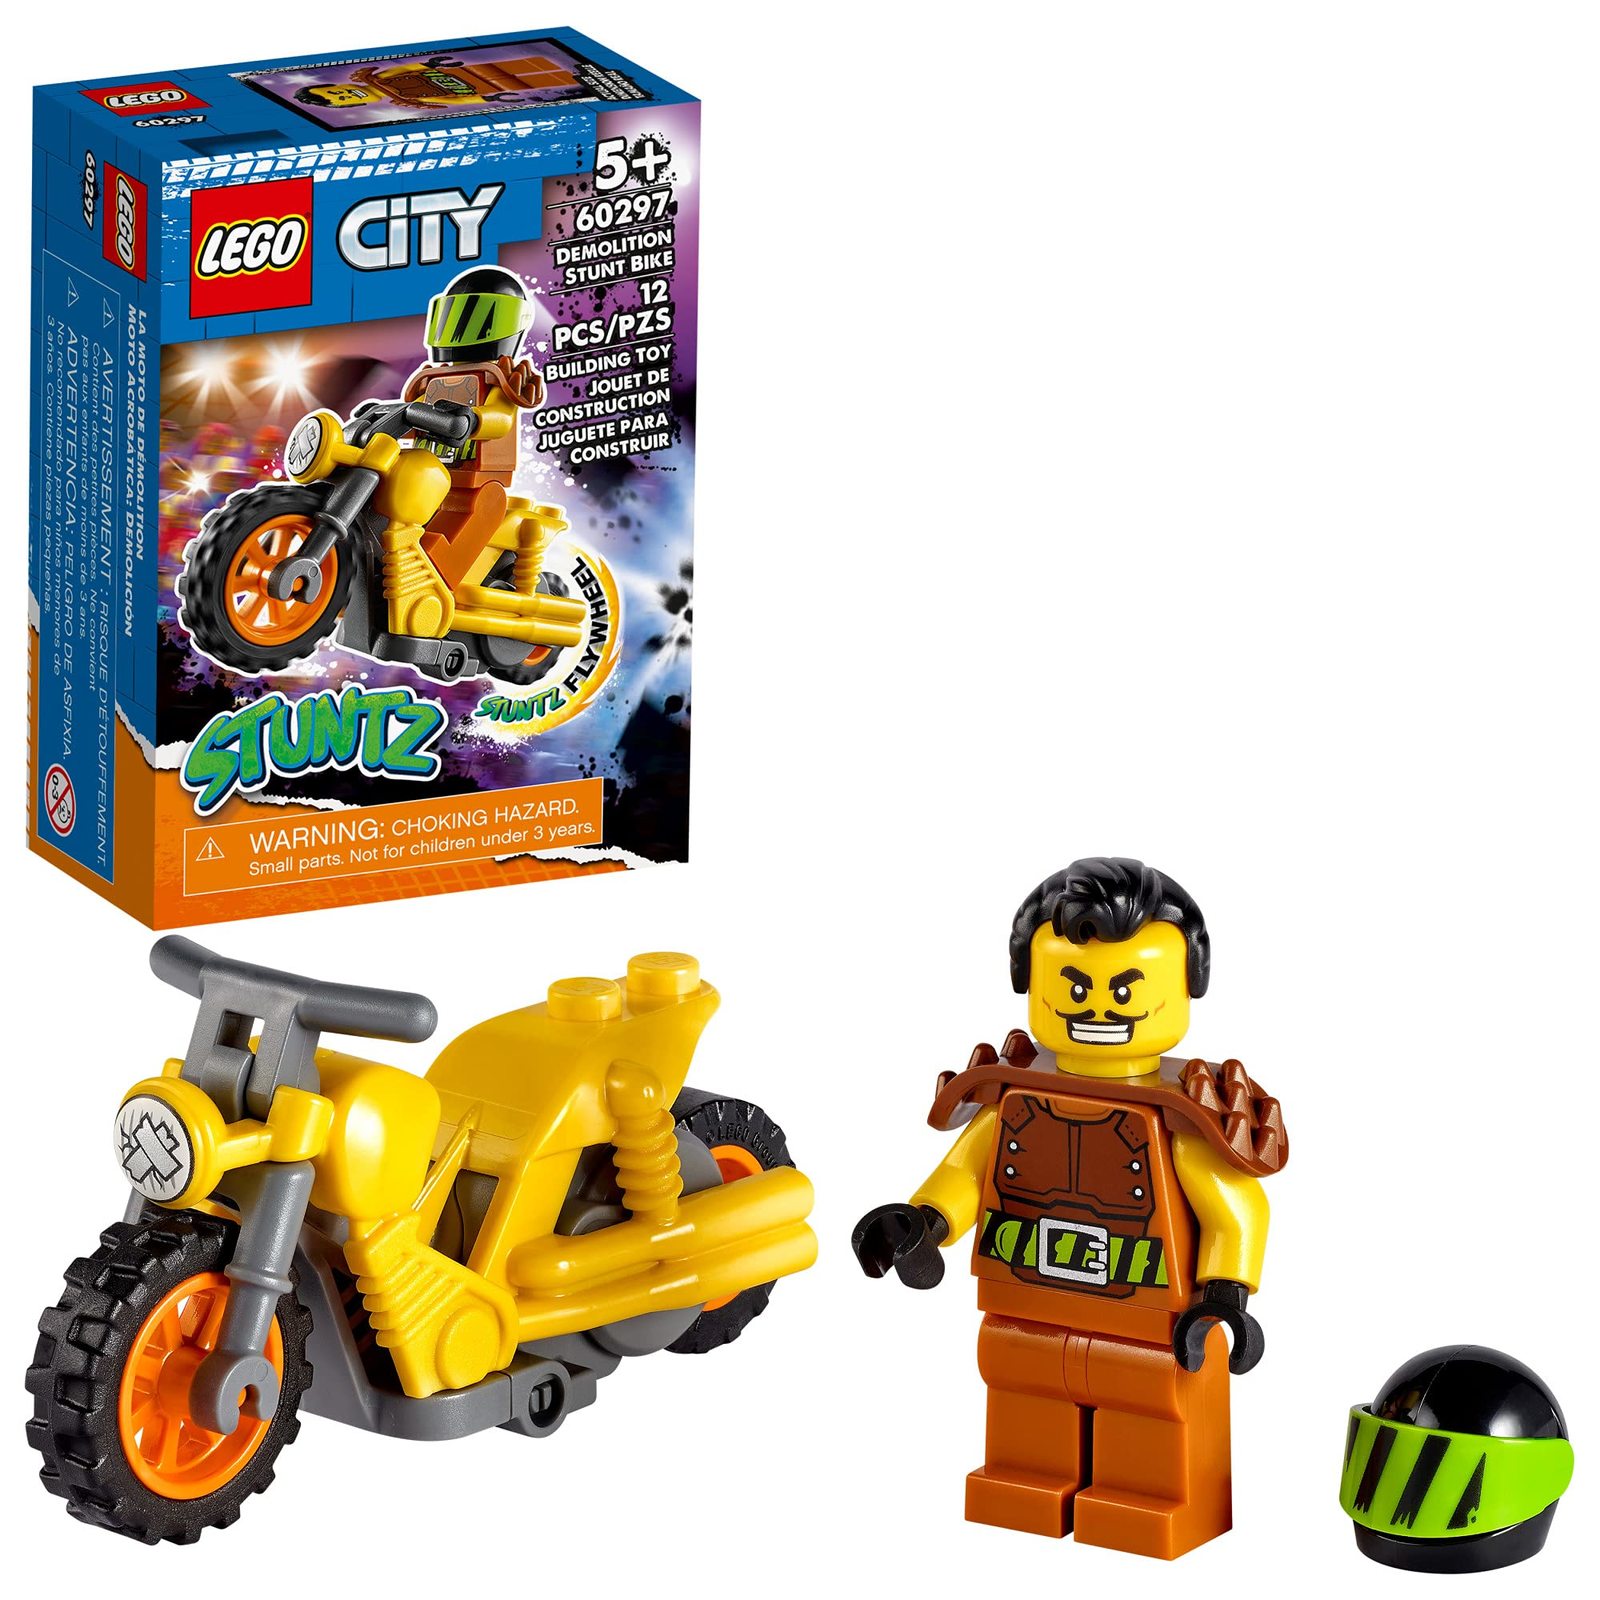 LEGO City Demolition Stunt Bike 60297 Building Kit (12 Pieces) - $17.77